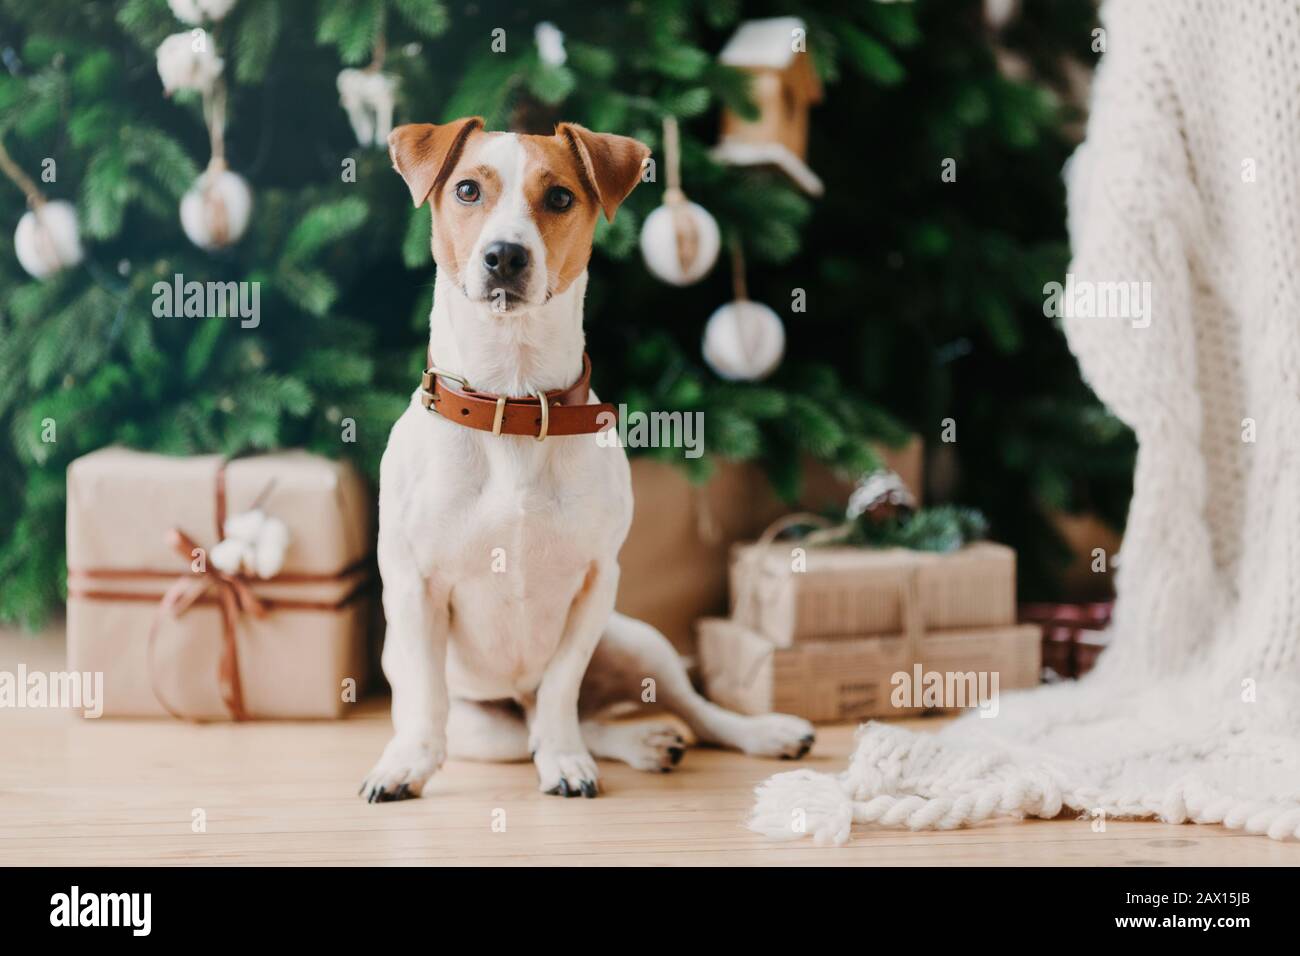 Bild des Stammhunds sitzt auf dem Boden in der Nähe von dekoriertem Firbaum und Weihnachtsgeschenken, hat festliche Stimmung und ist zu Hause. Tier- und Winterzeitkonzept Stockfoto